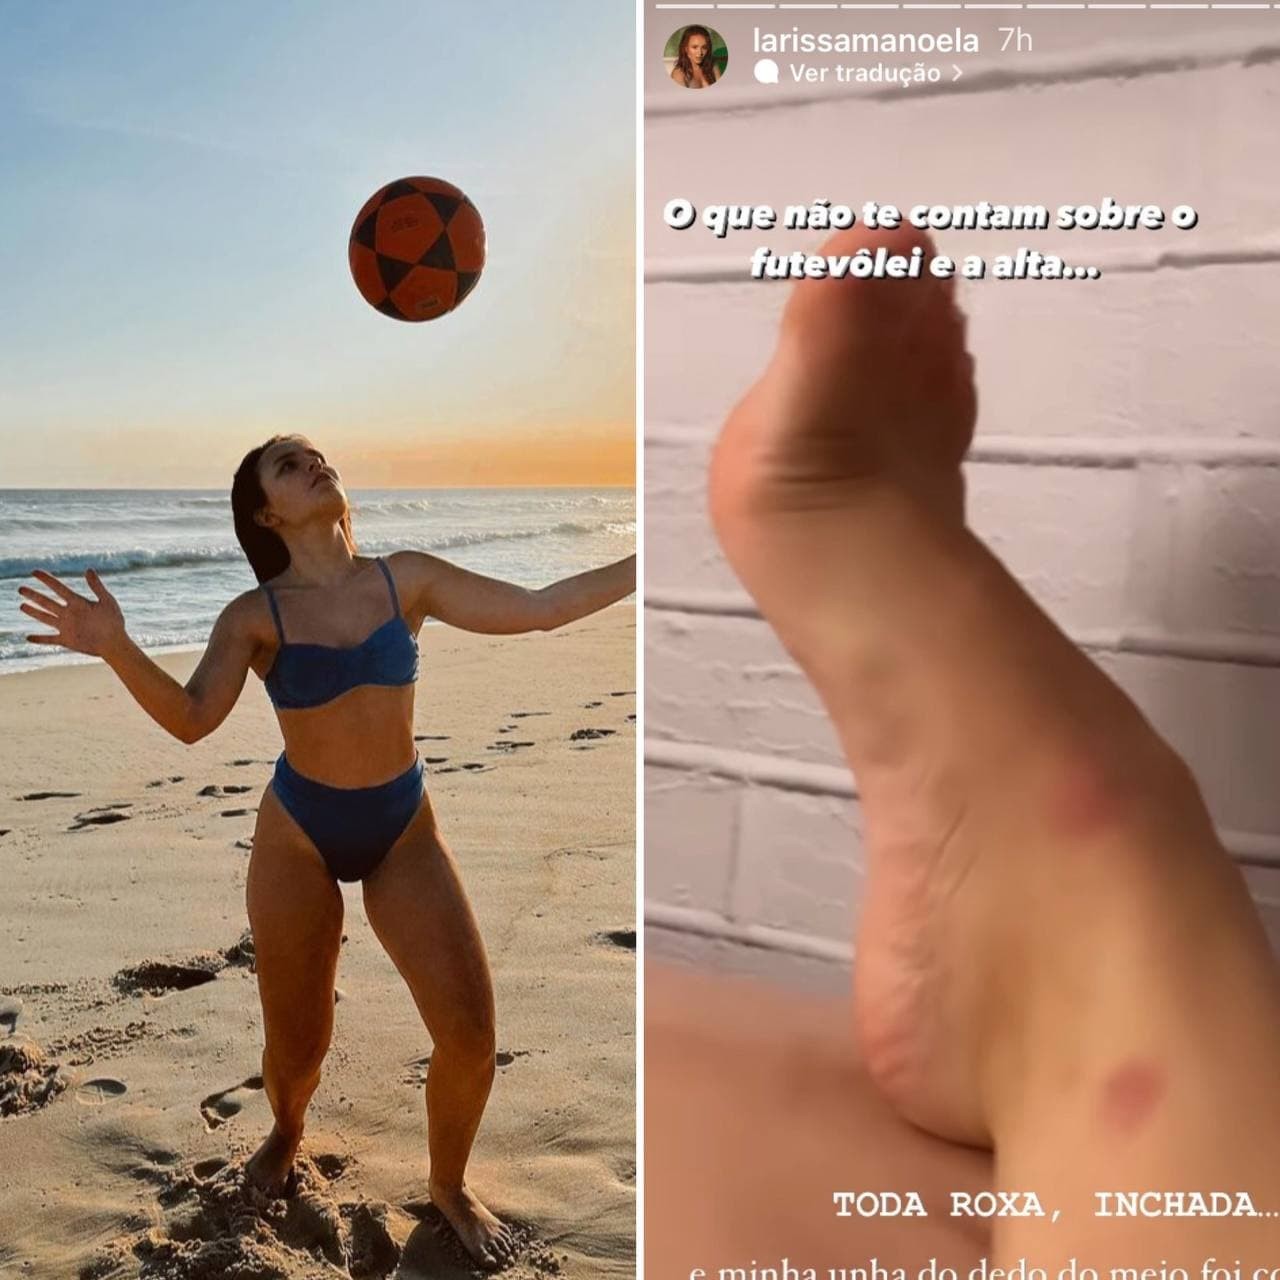 Larissa Manoela usa as redes para mostrar pé machucado após jogar futevôlei e altinha (Foto: Reprodução / Instagram)